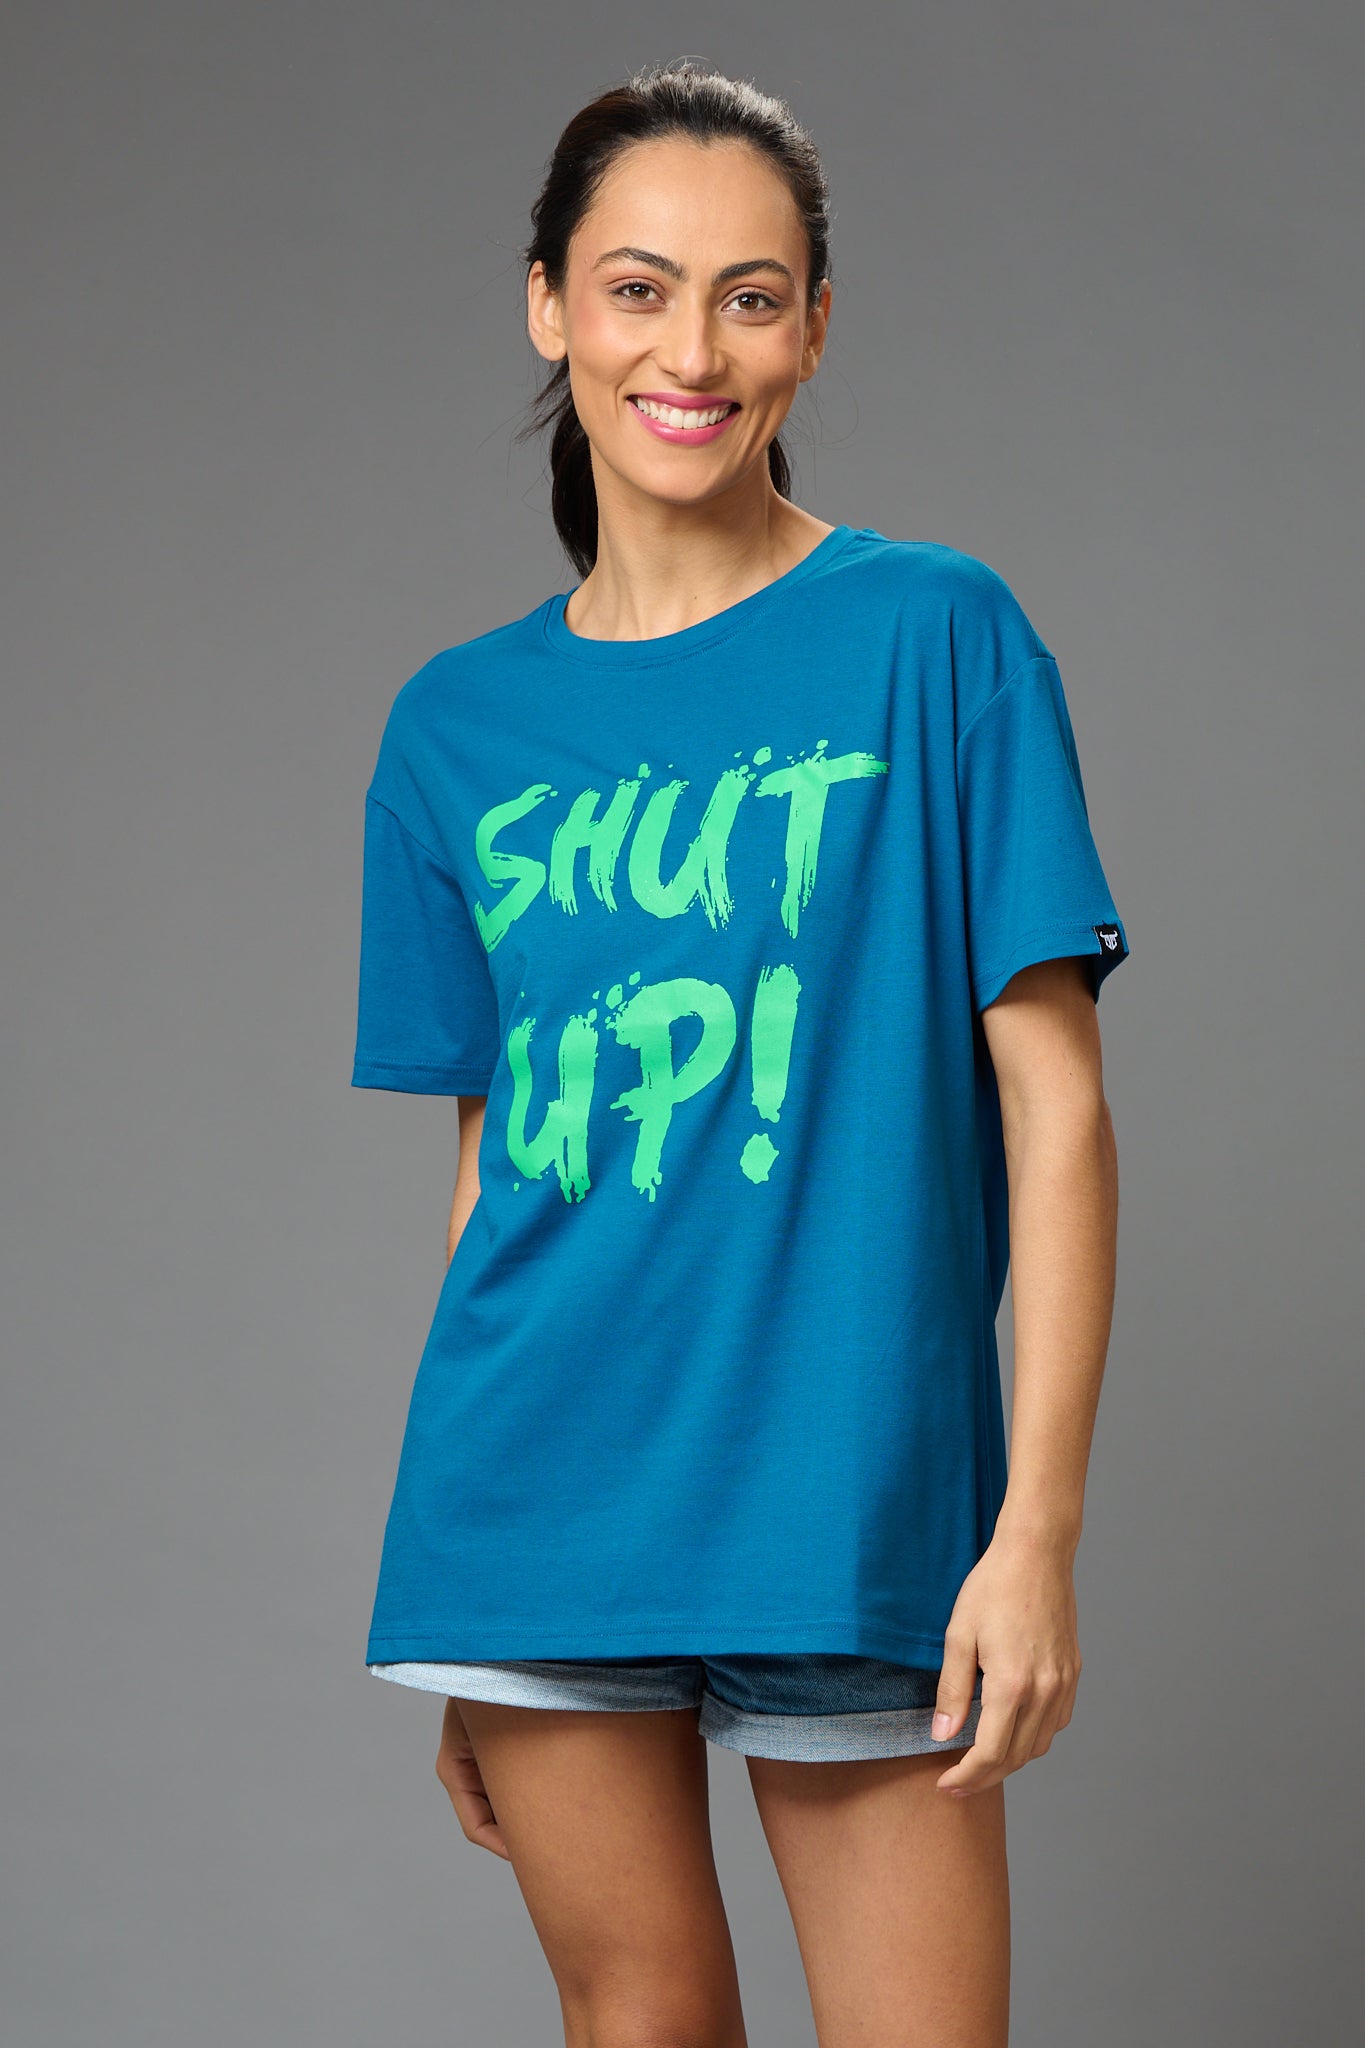 Shut Up! Printed Blue Oversized T-Shirt for Women - Go Devil